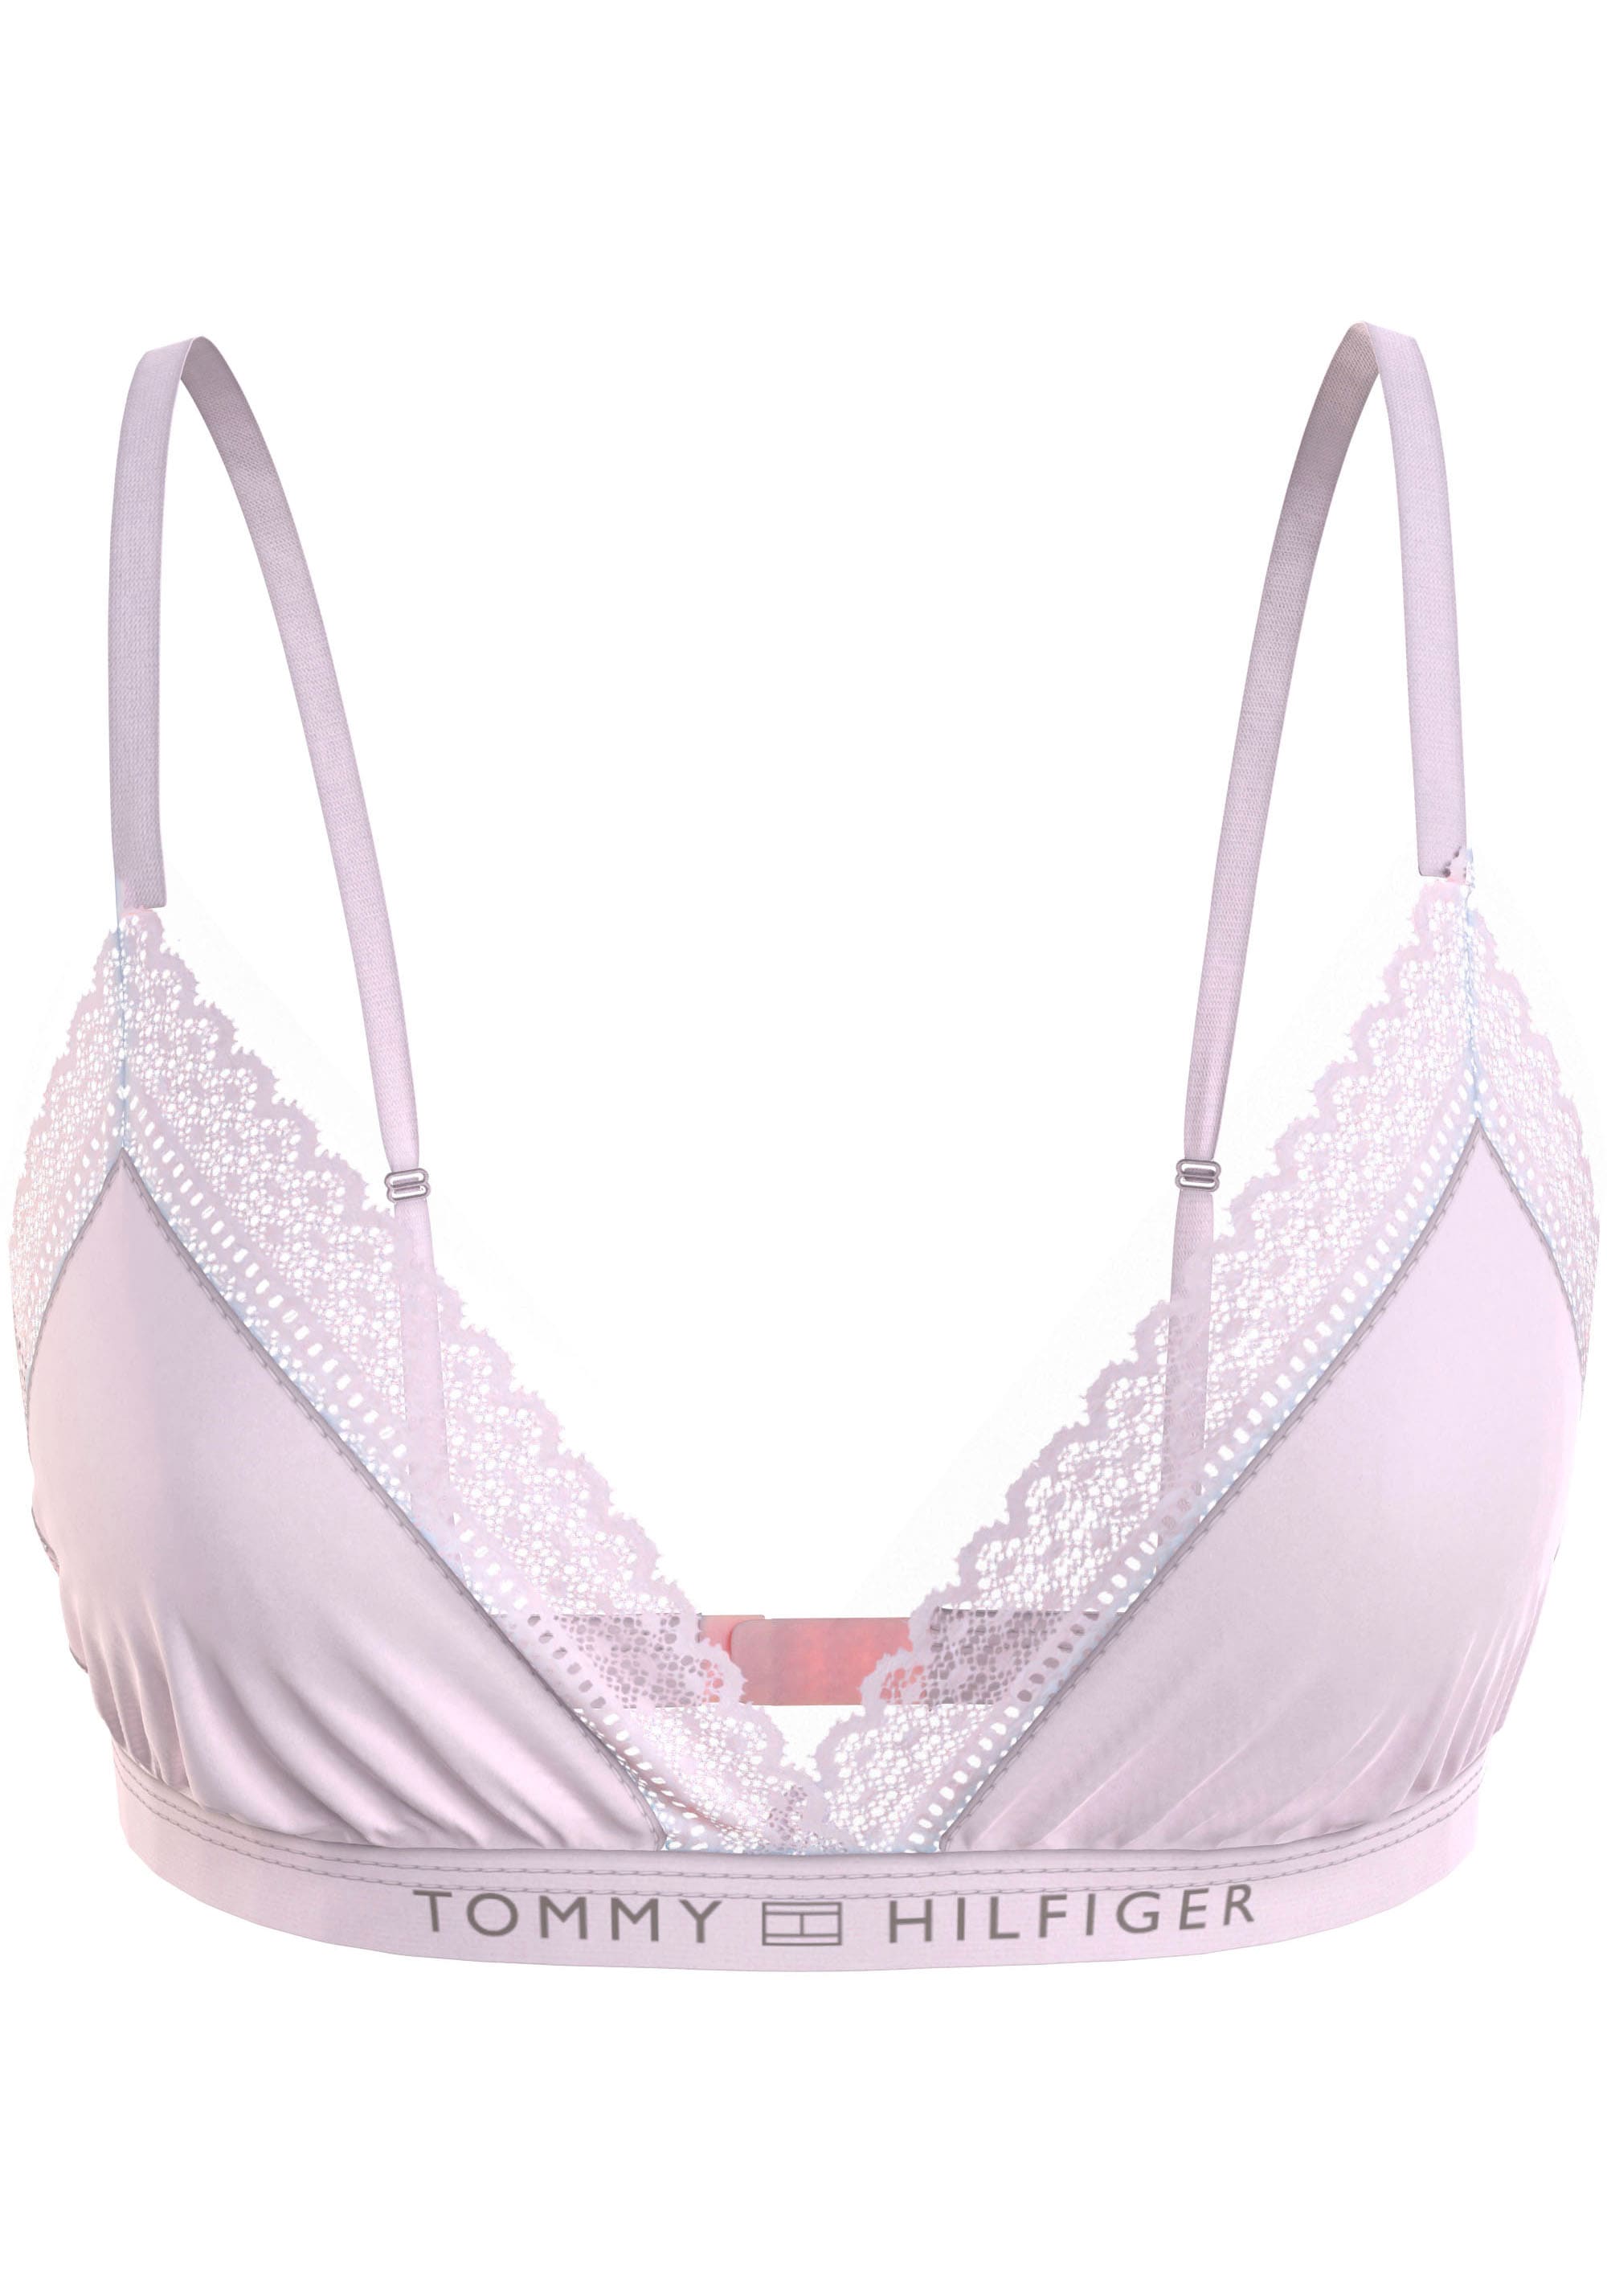 Tommy Hilfiger Underwear Bralette-BH, mit Tommy Hilfiger Logobund-Tommy Hilfiger 1